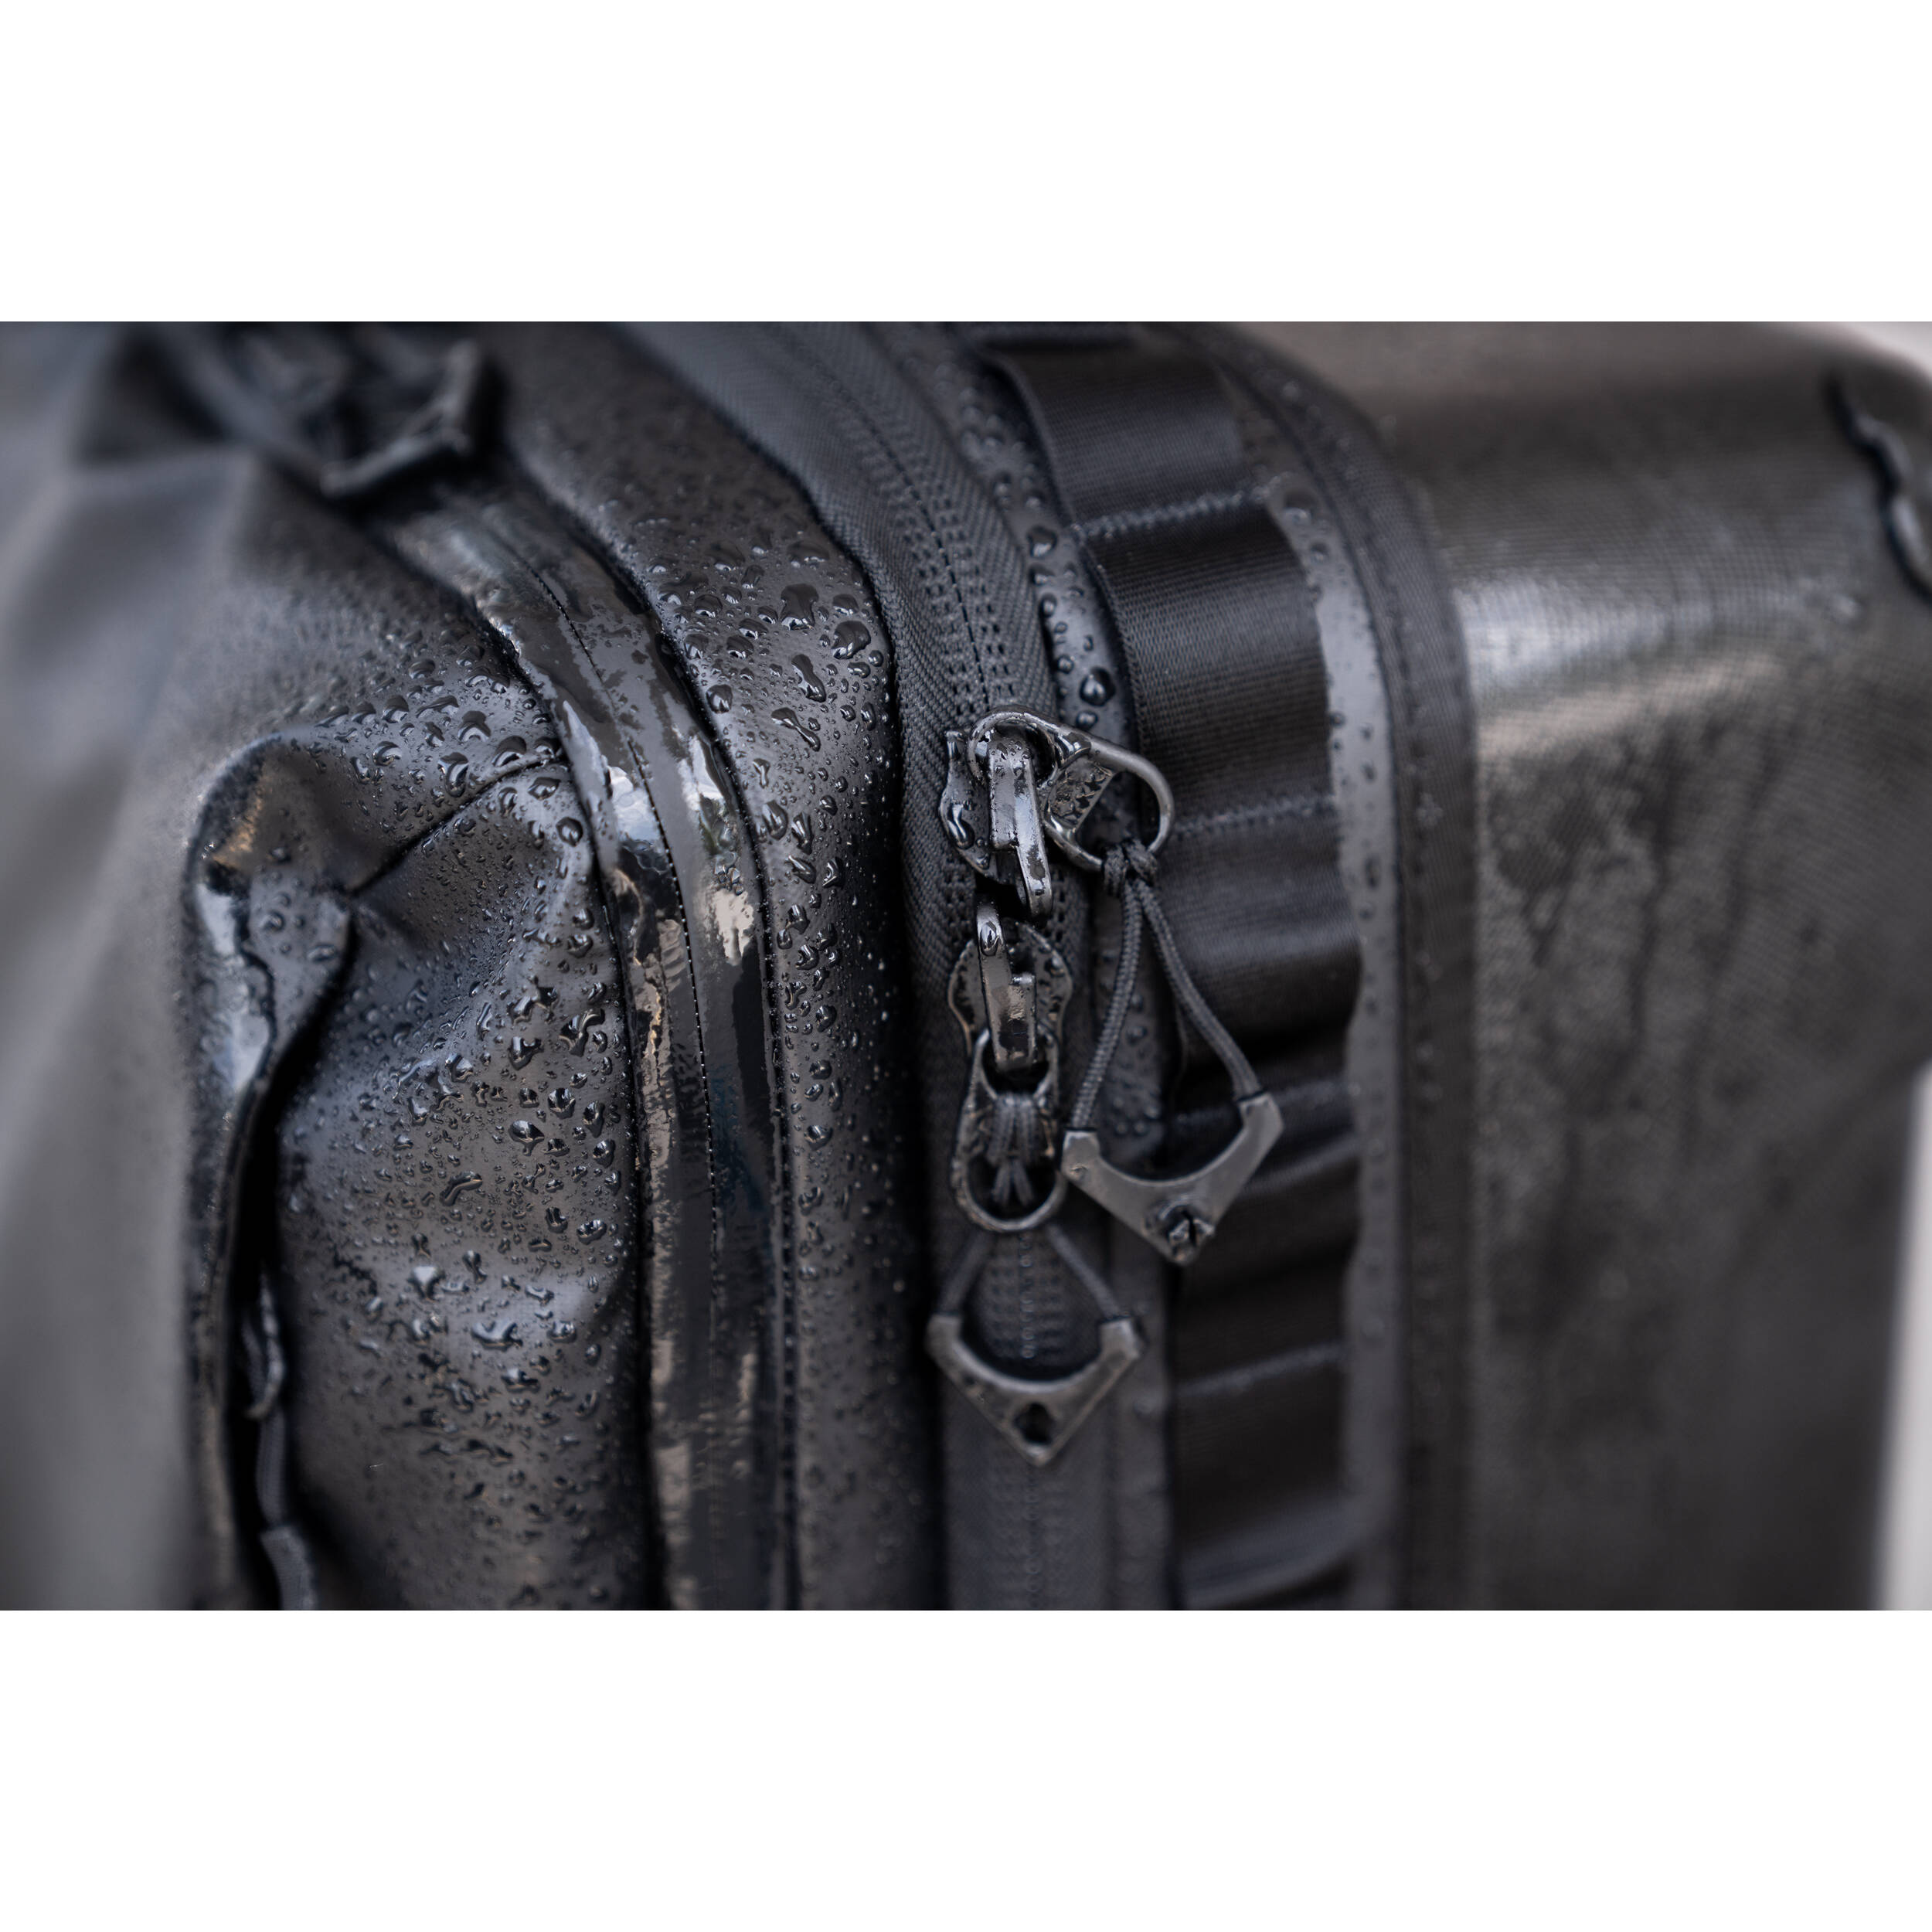 WANDRD Transit Carry-On Roller Bag  - 40L - Black - Essential + Bundle